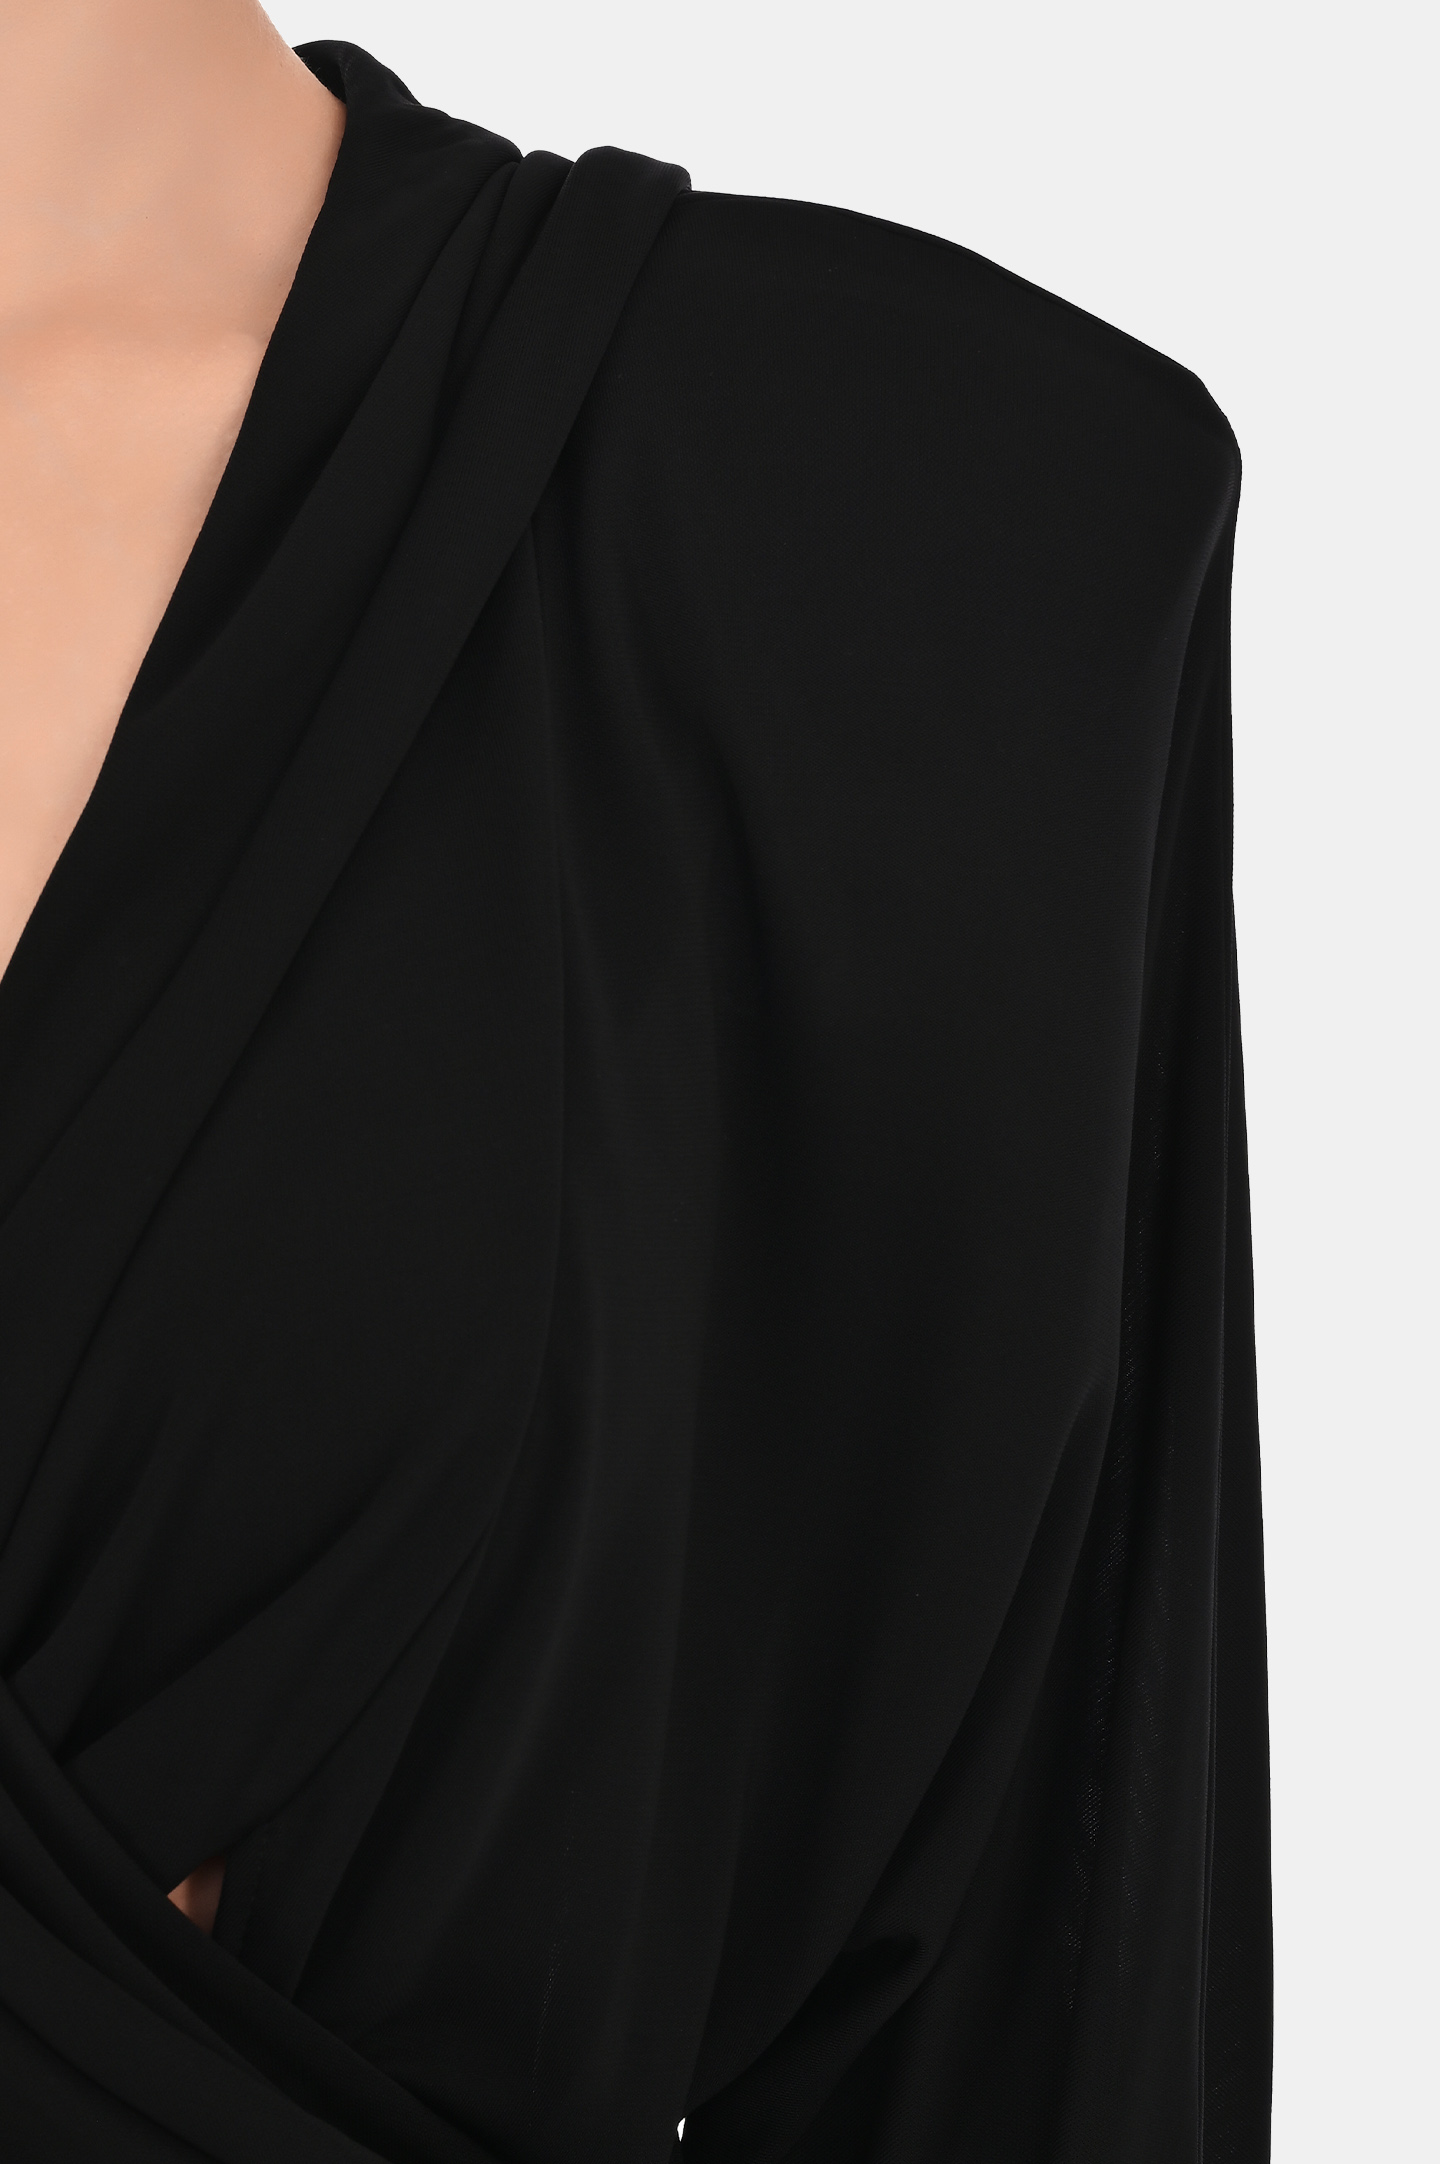 Платье с капюшоном и открытой спиной JACOB LEE WDV001SS24B, цвет: Черный, Женский